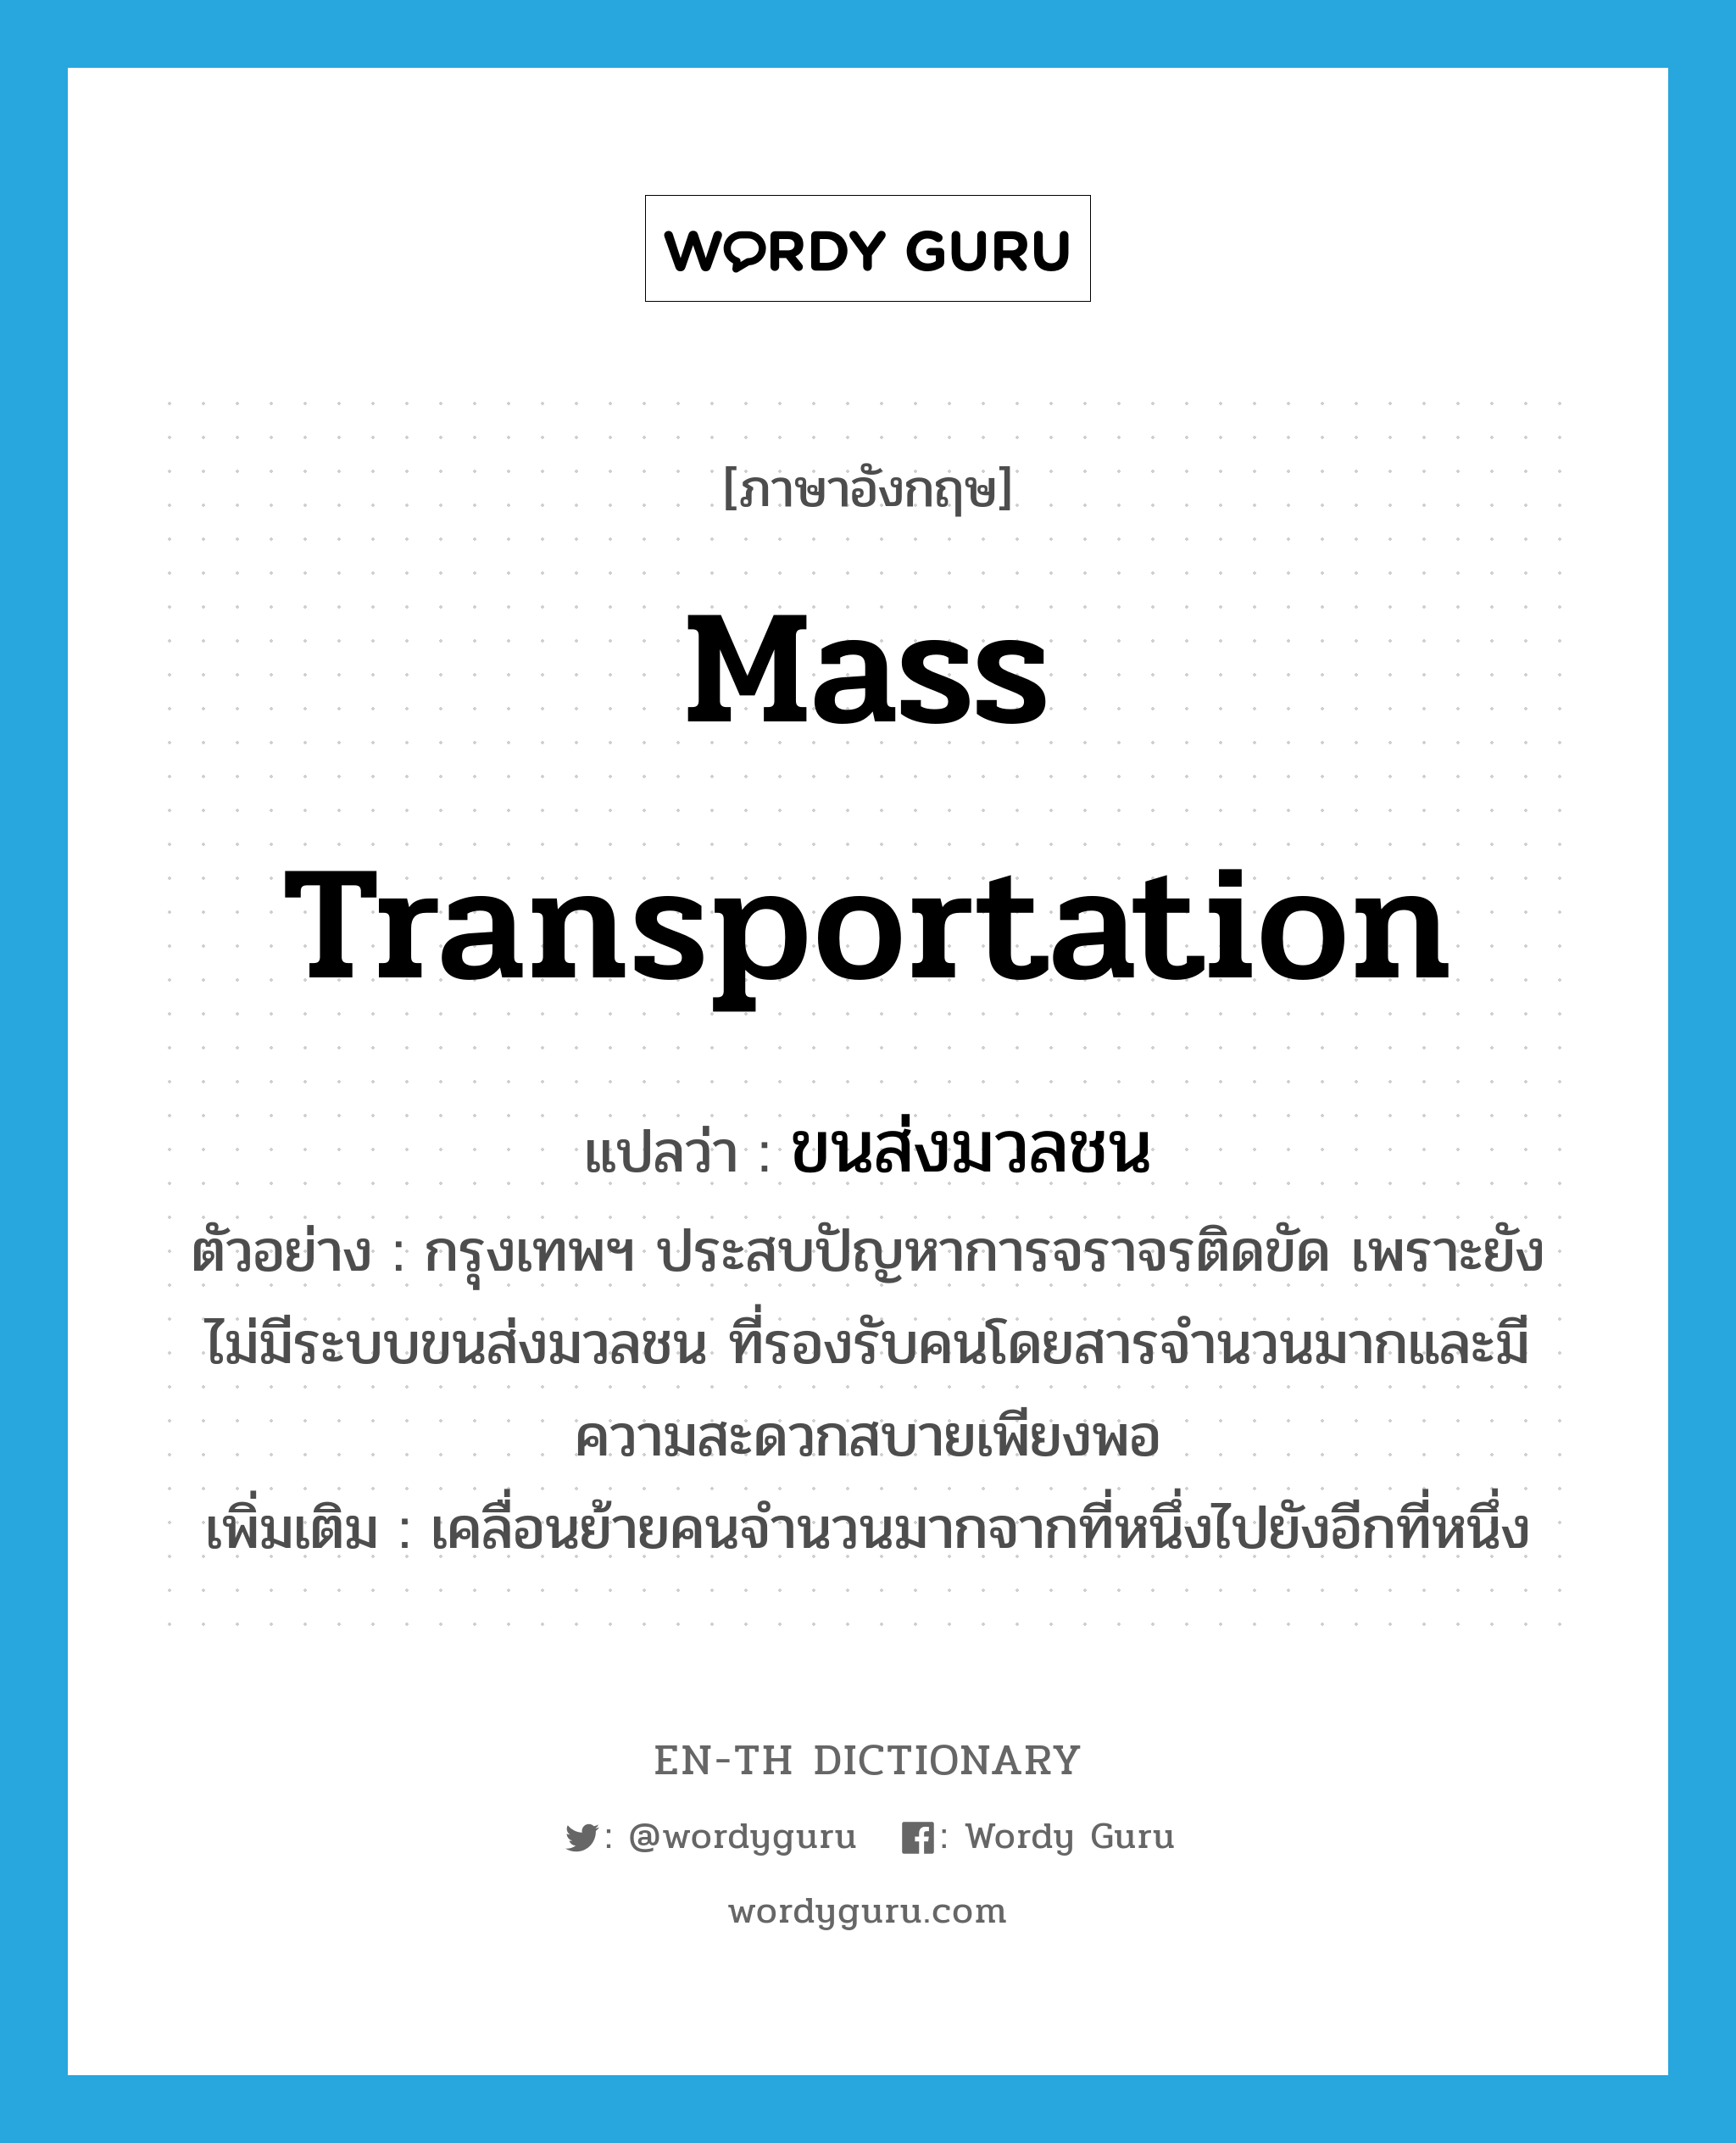 mass transportation แปลว่า?, คำศัพท์ภาษาอังกฤษ mass transportation แปลว่า ขนส่งมวลชน ประเภท N ตัวอย่าง กรุงเทพฯ ประสบปัญหาการจราจรติดขัด เพราะยังไม่มีระบบขนส่งมวลชน ที่รองรับคนโดยสารจำนวนมากและมีความสะดวกสบายเพียงพอ เพิ่มเติม เคลื่อนย้ายคนจำนวนมากจากที่หนึ่งไปยังอีกที่หนึ่ง หมวด N